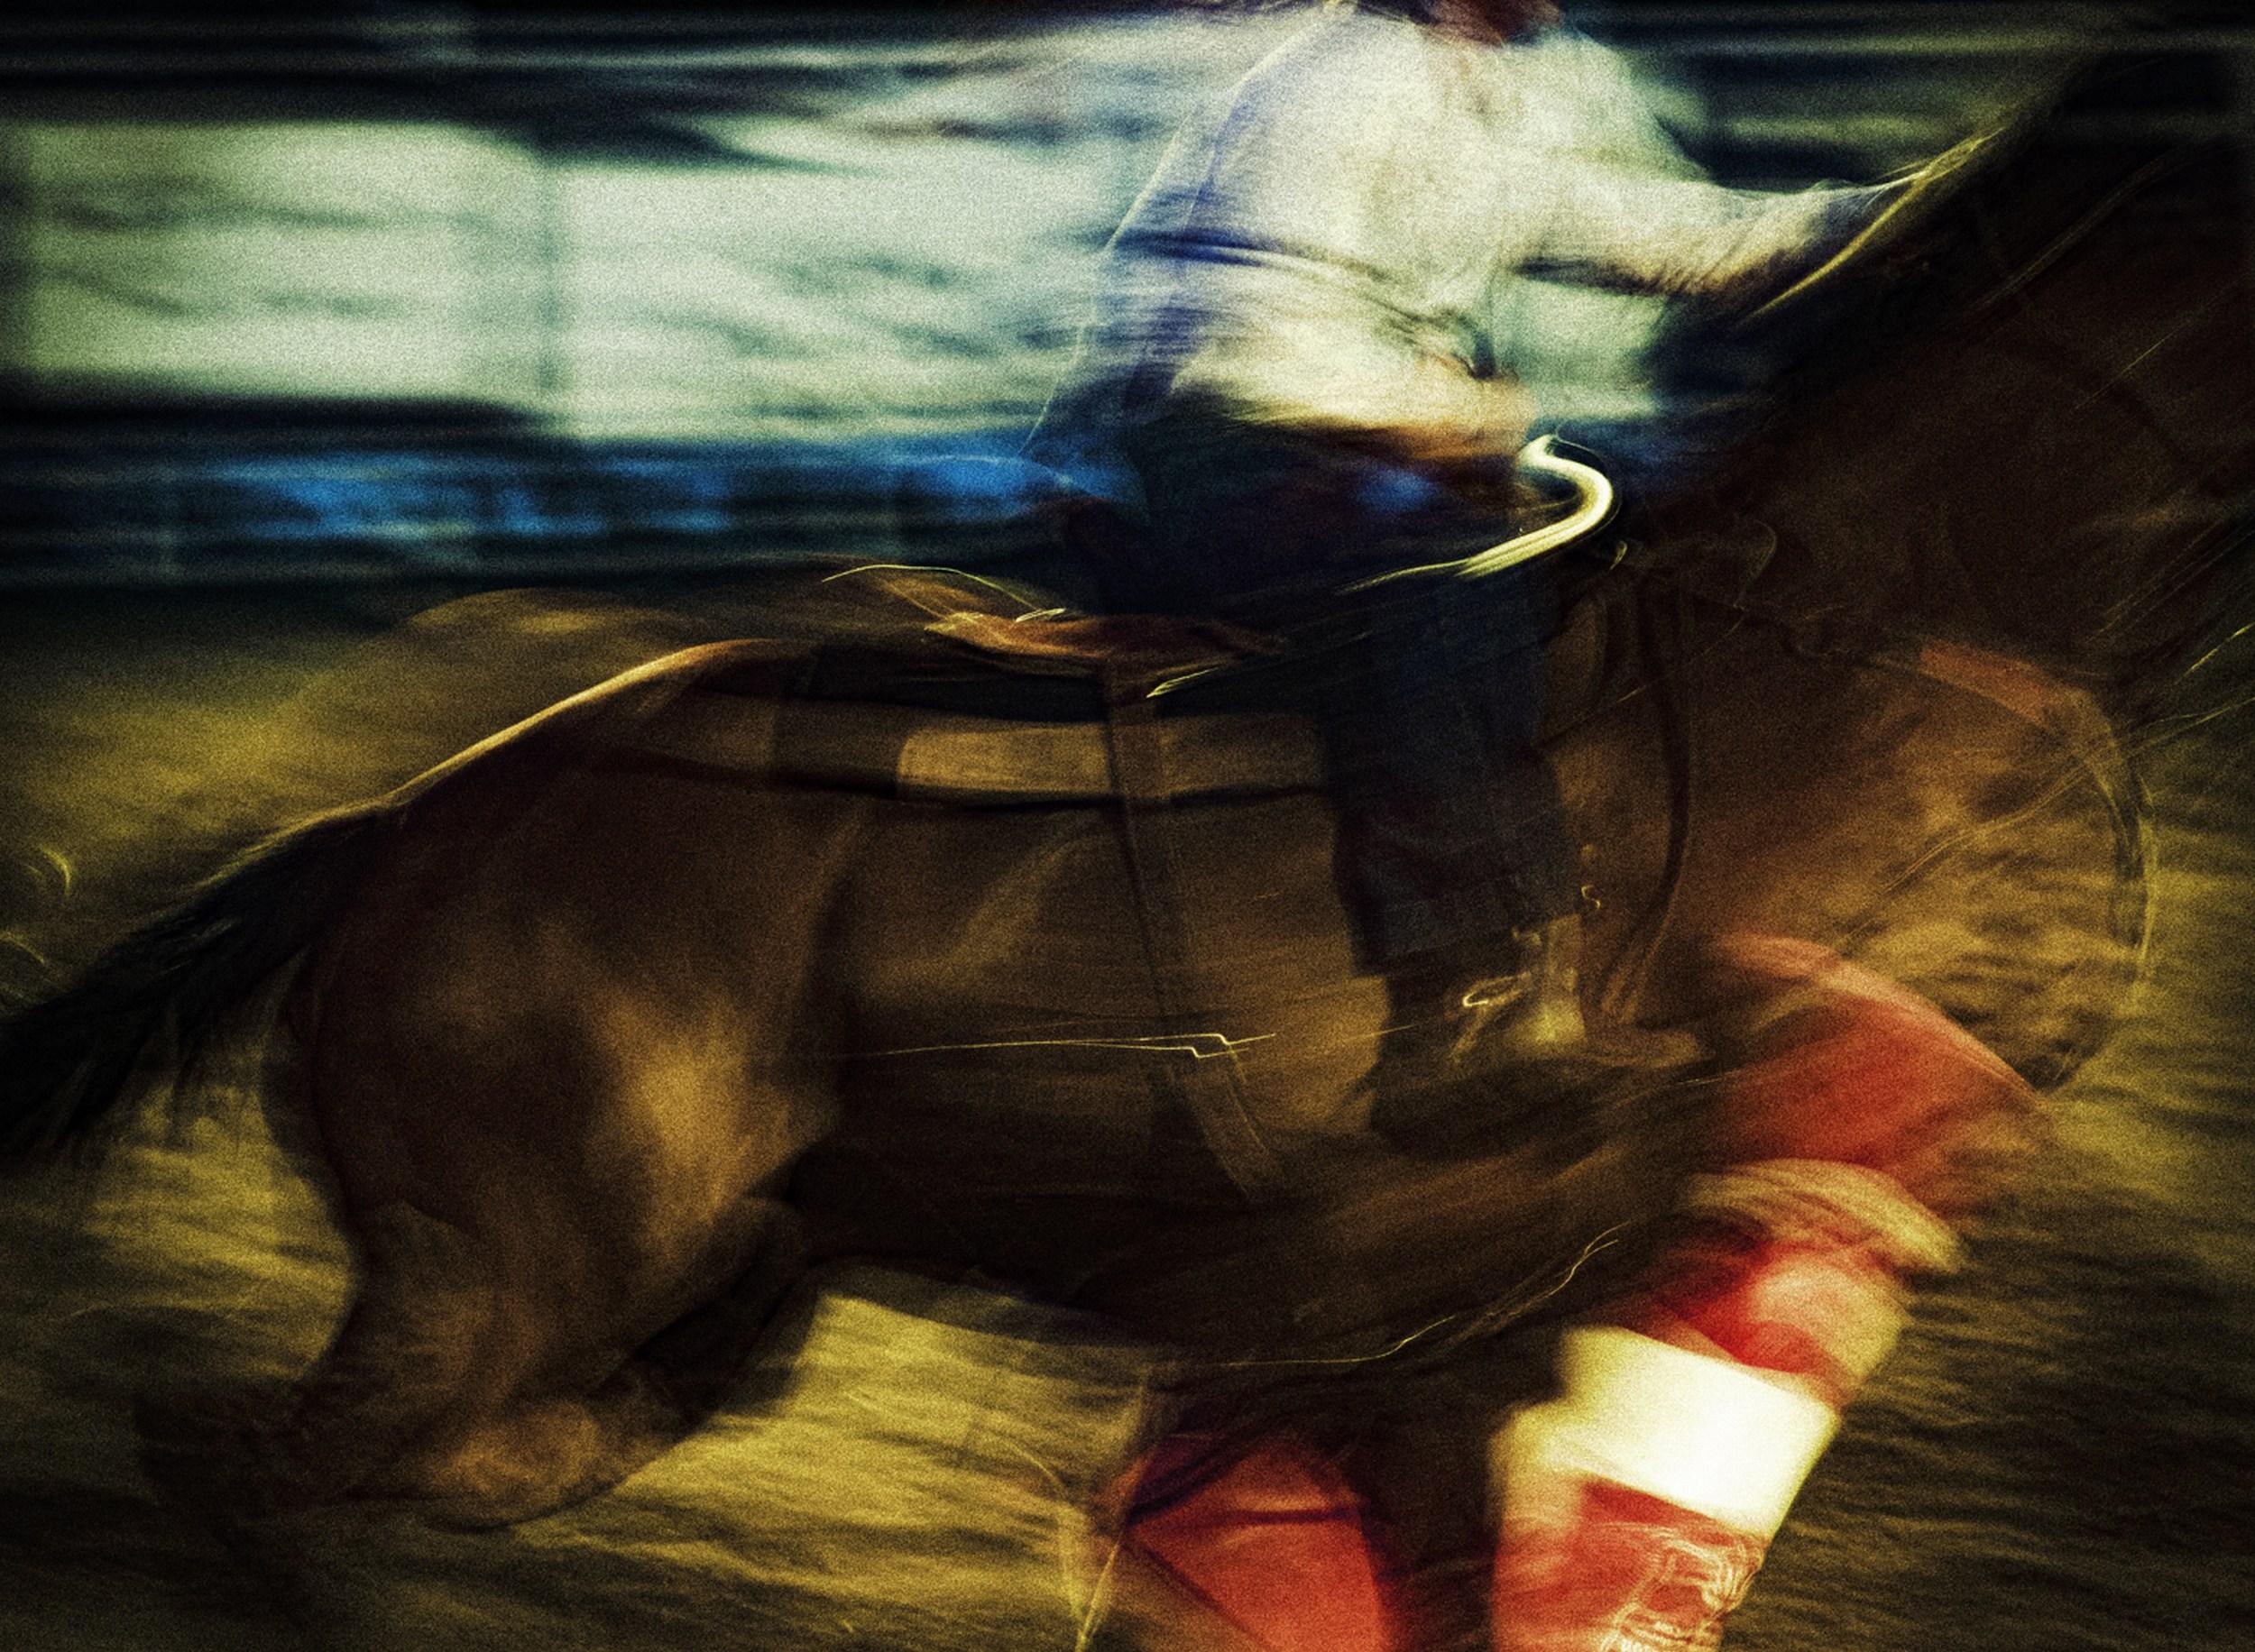 Jeffrey Tamblyn Abstract Photograph – Sturdy (Rodeo, Pferd, Bewegung verschwimmt, kinetisch, farbenfroh)